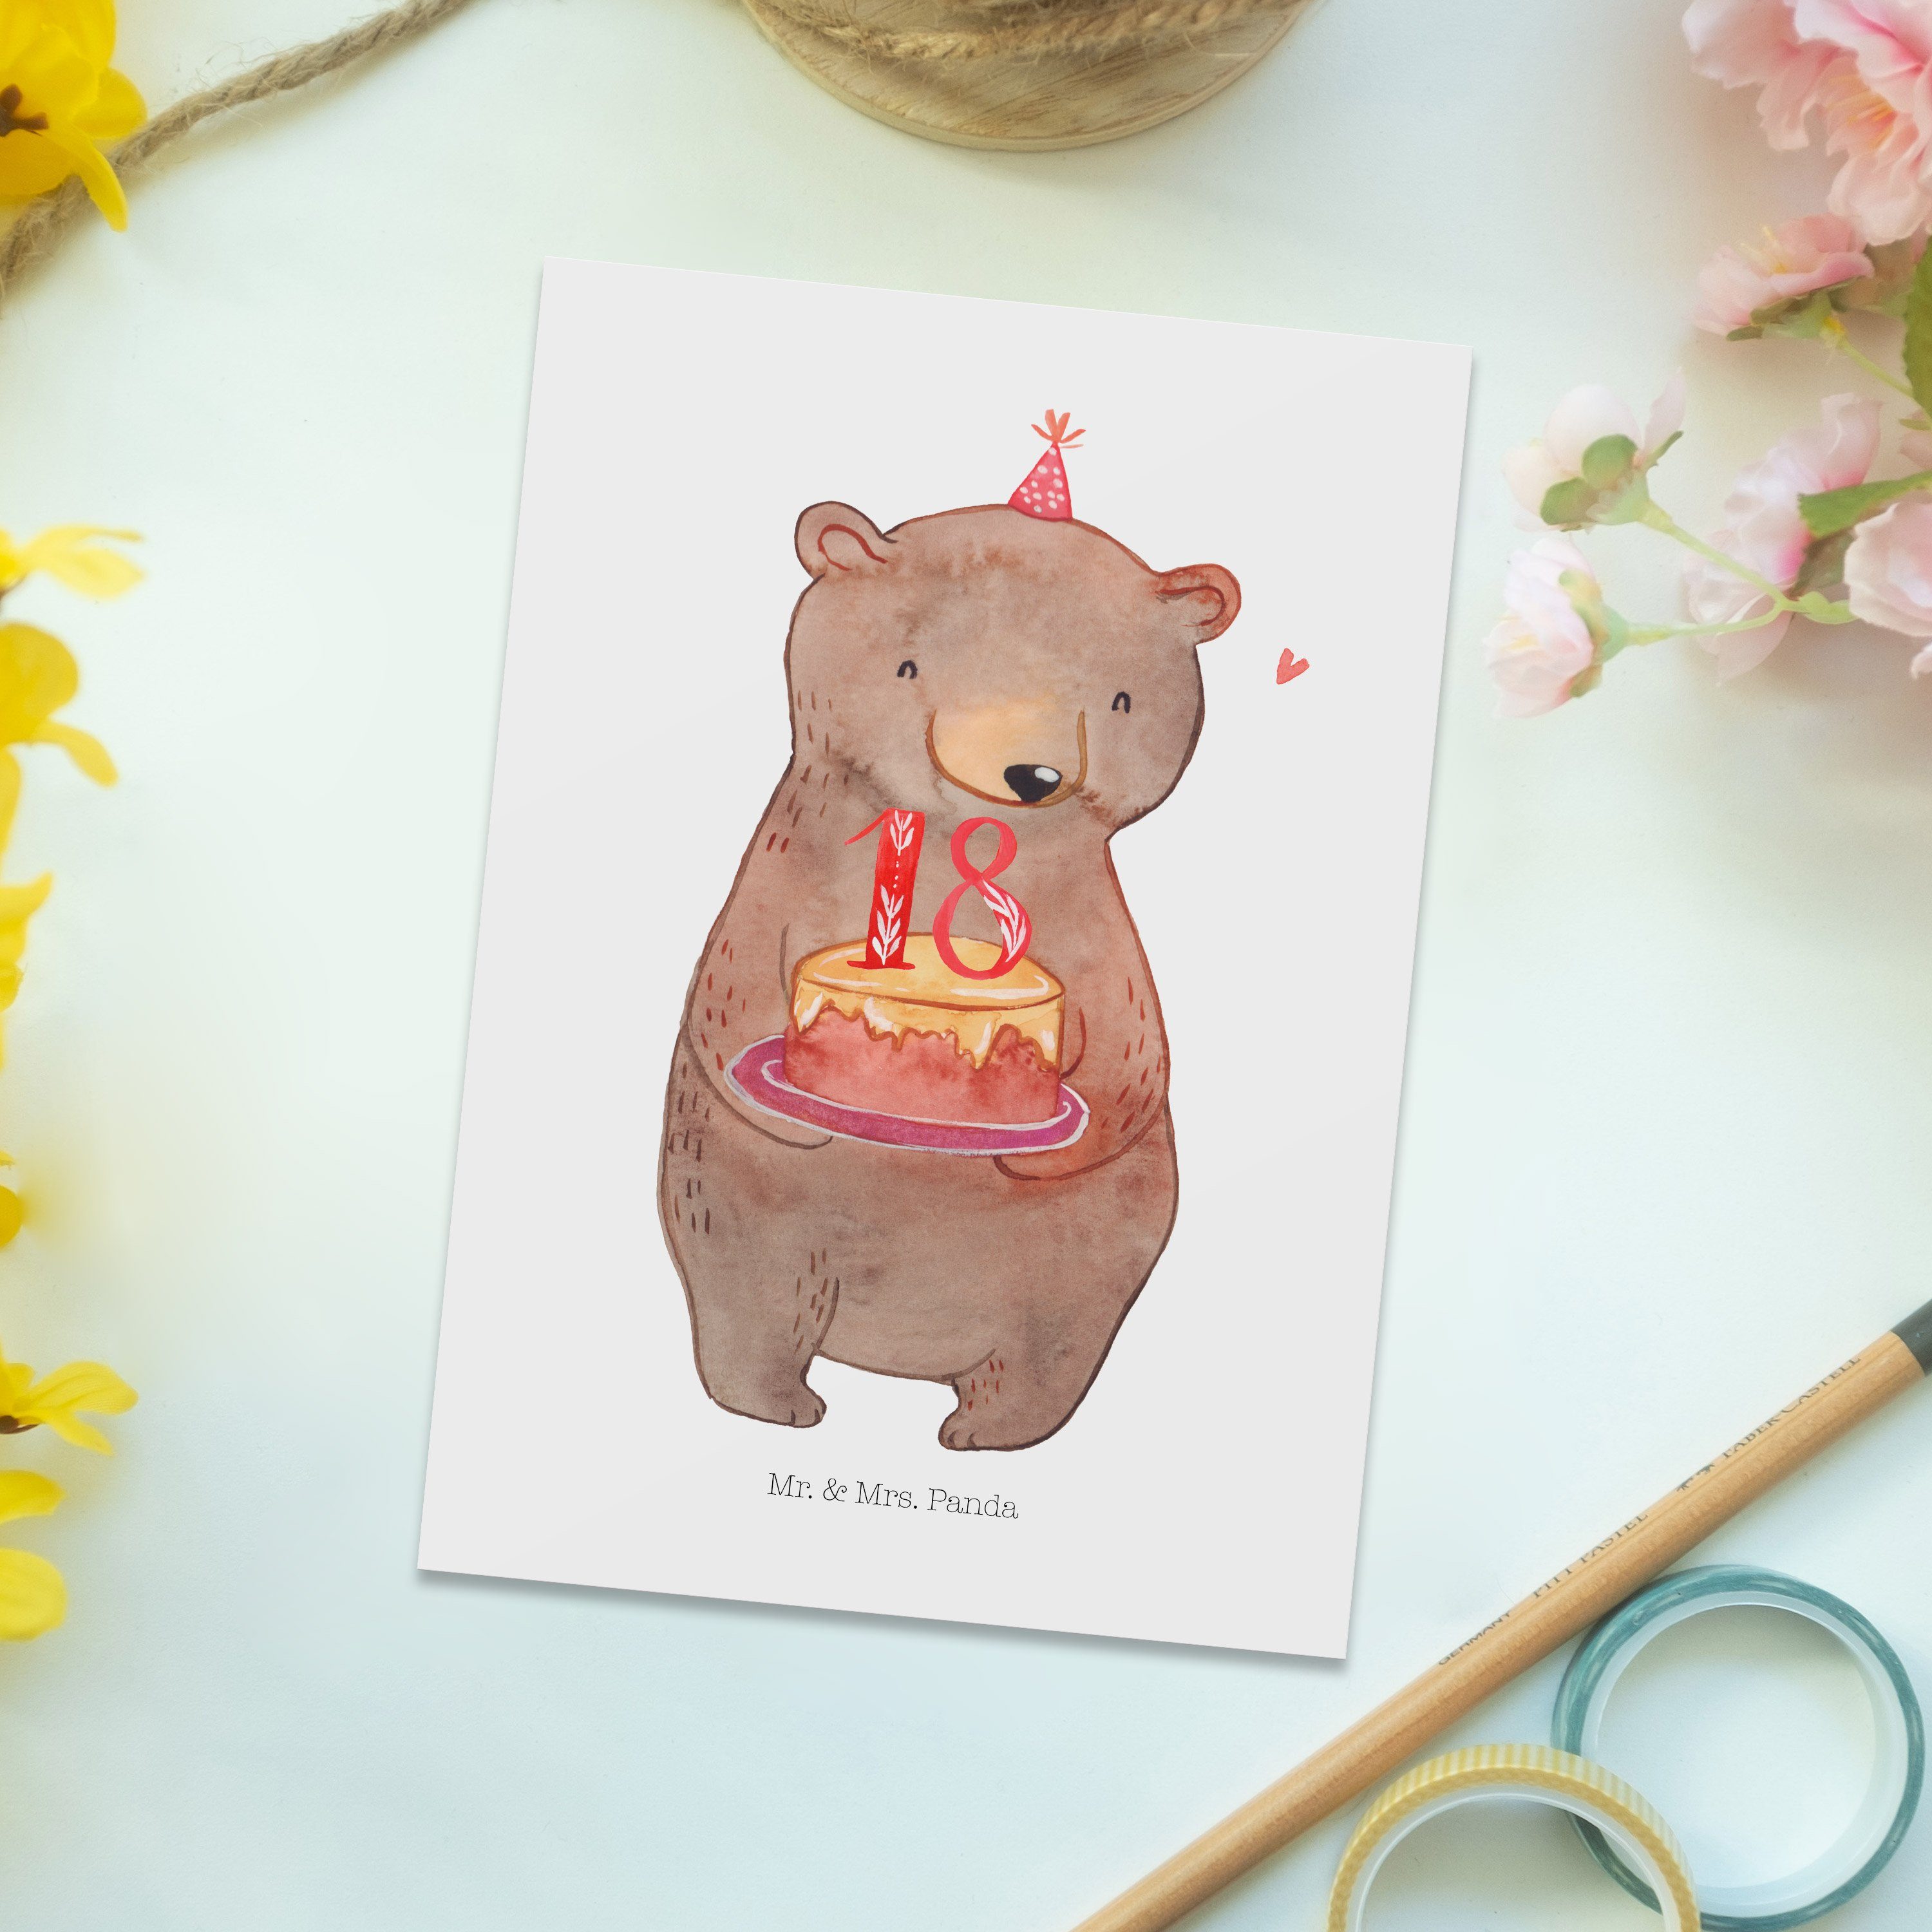 Mr. Geburtstag Panda Feiern Torte Weiß - - Mrs. Geschenk, 18. & Geburtstagskarte, Bär Postkarte